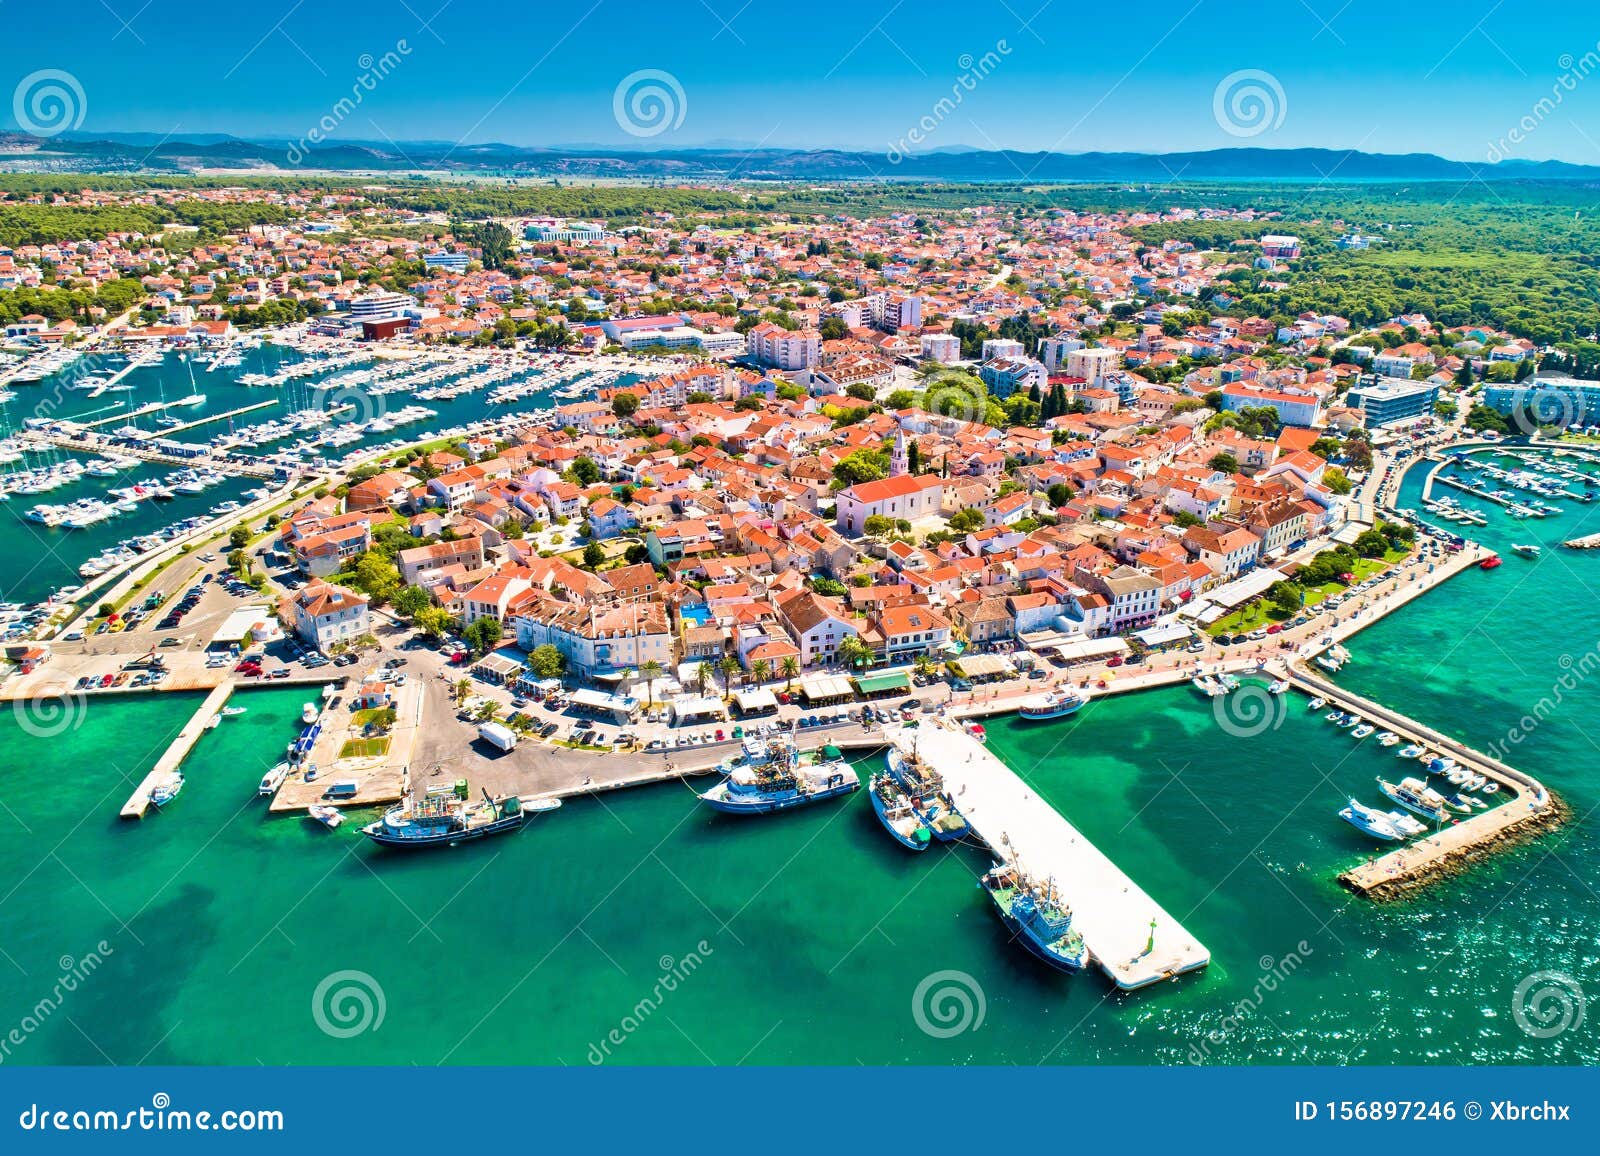 biograd na moru historic coastal town aerial view